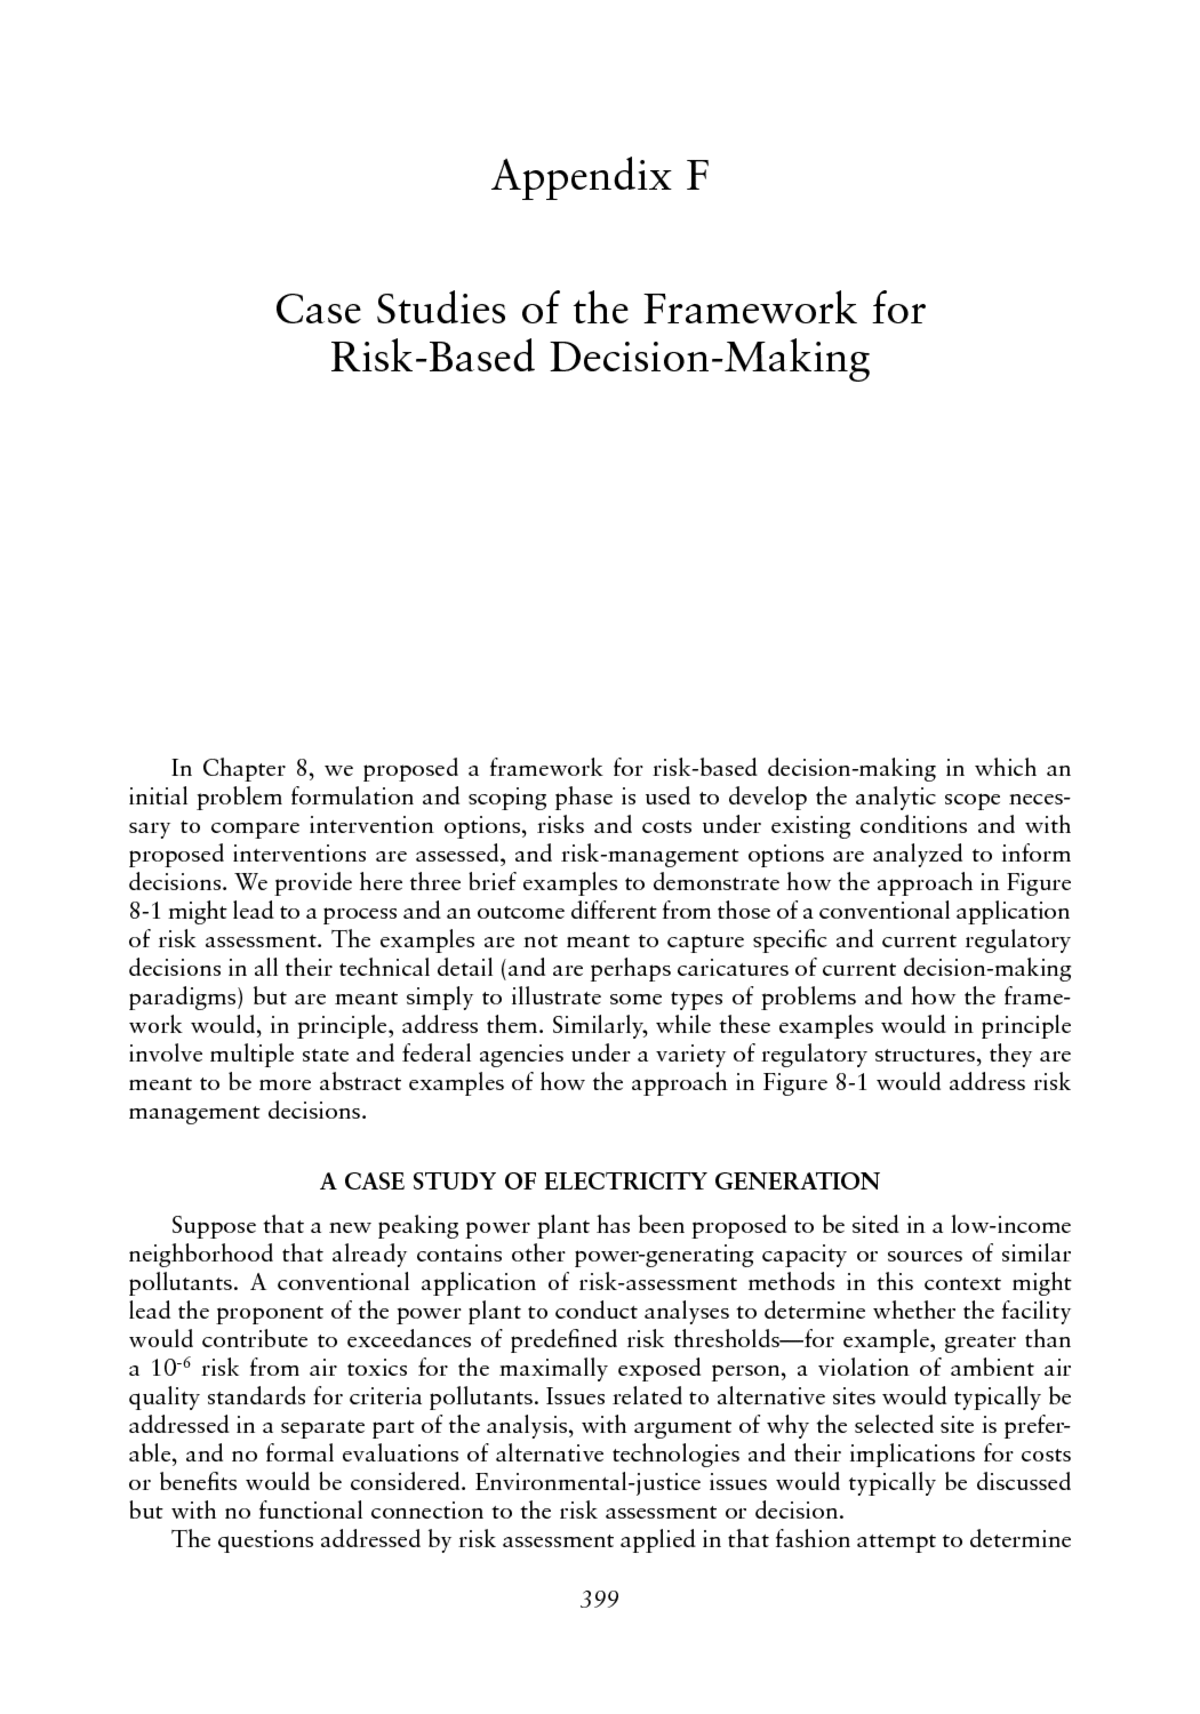 Appendix F: Case Studies of the Framework for Risk-Based ...